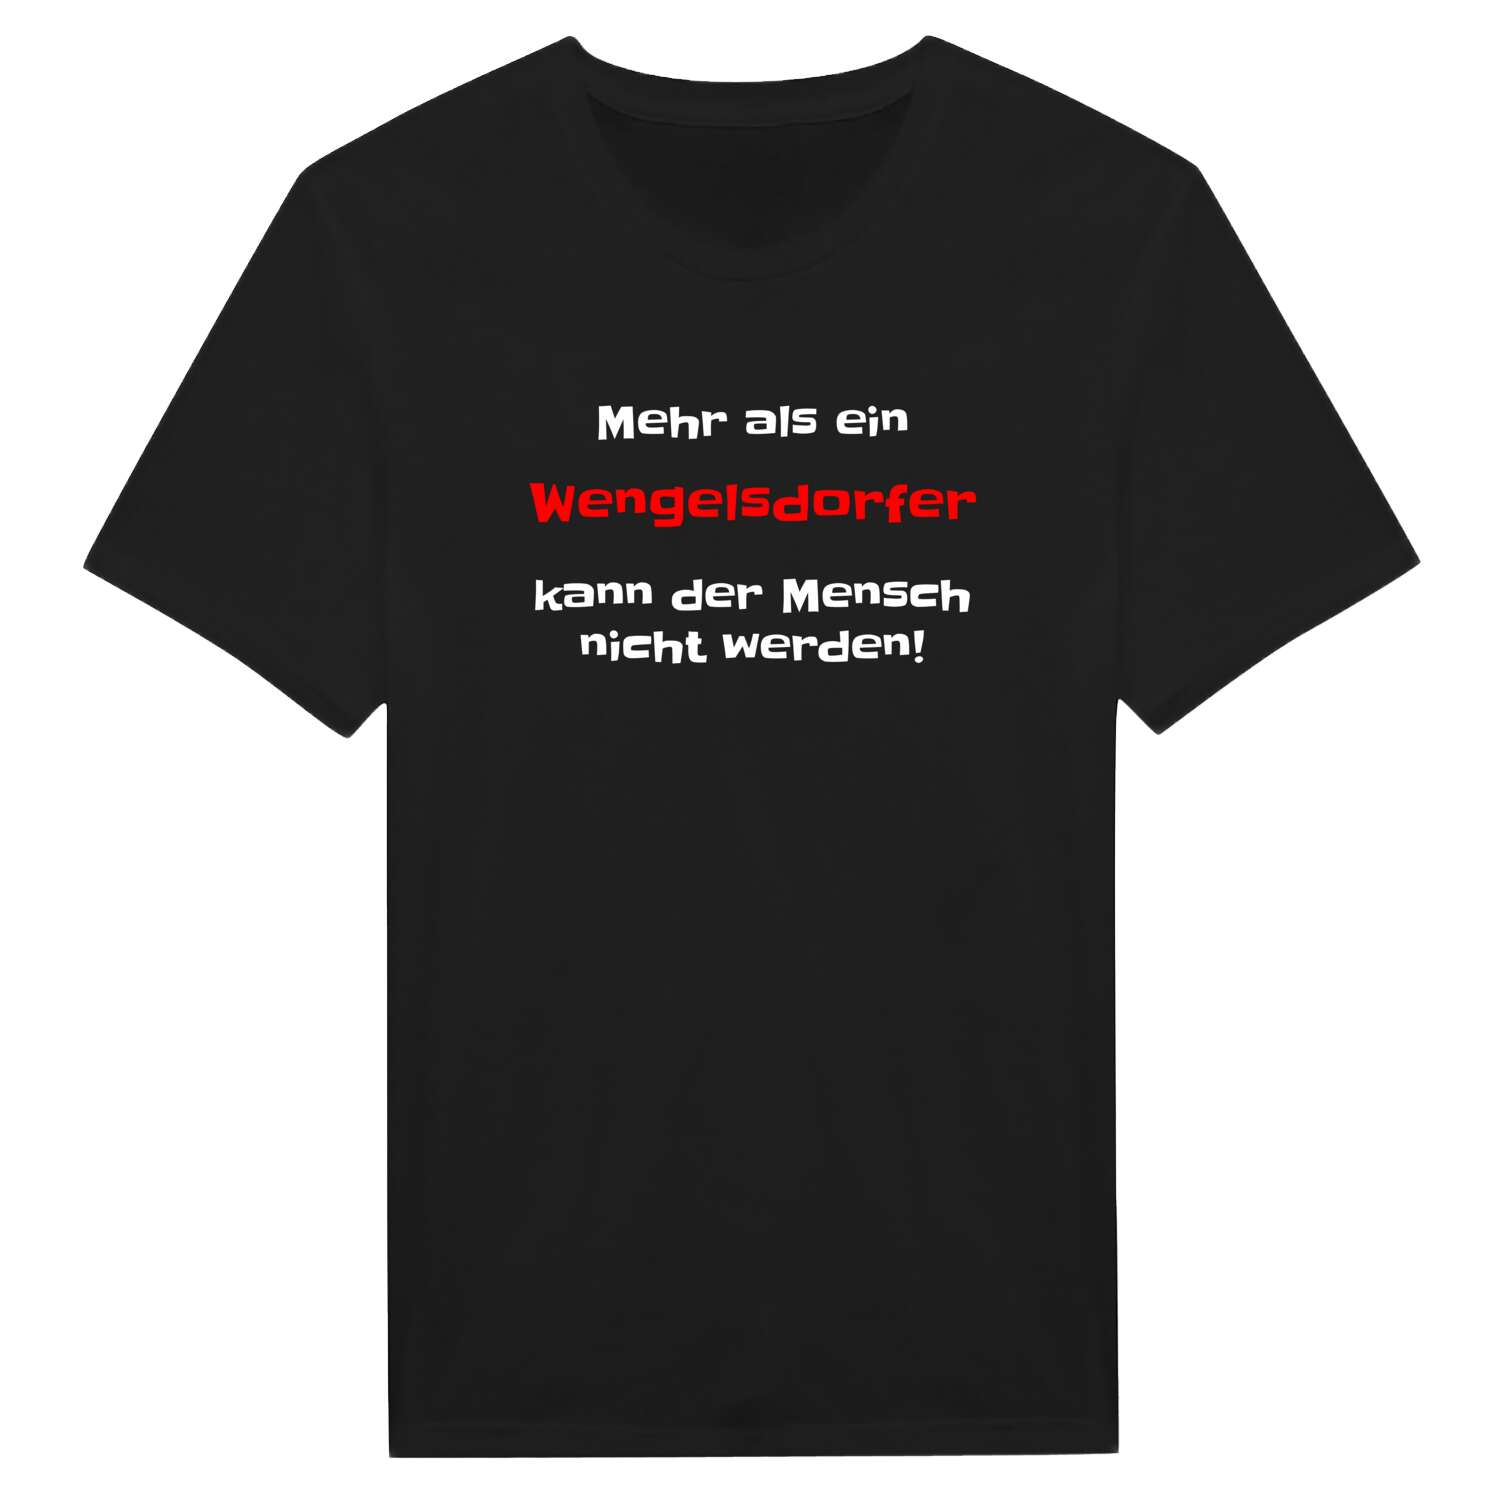 Wengelsdorf T-Shirt »Mehr als ein«